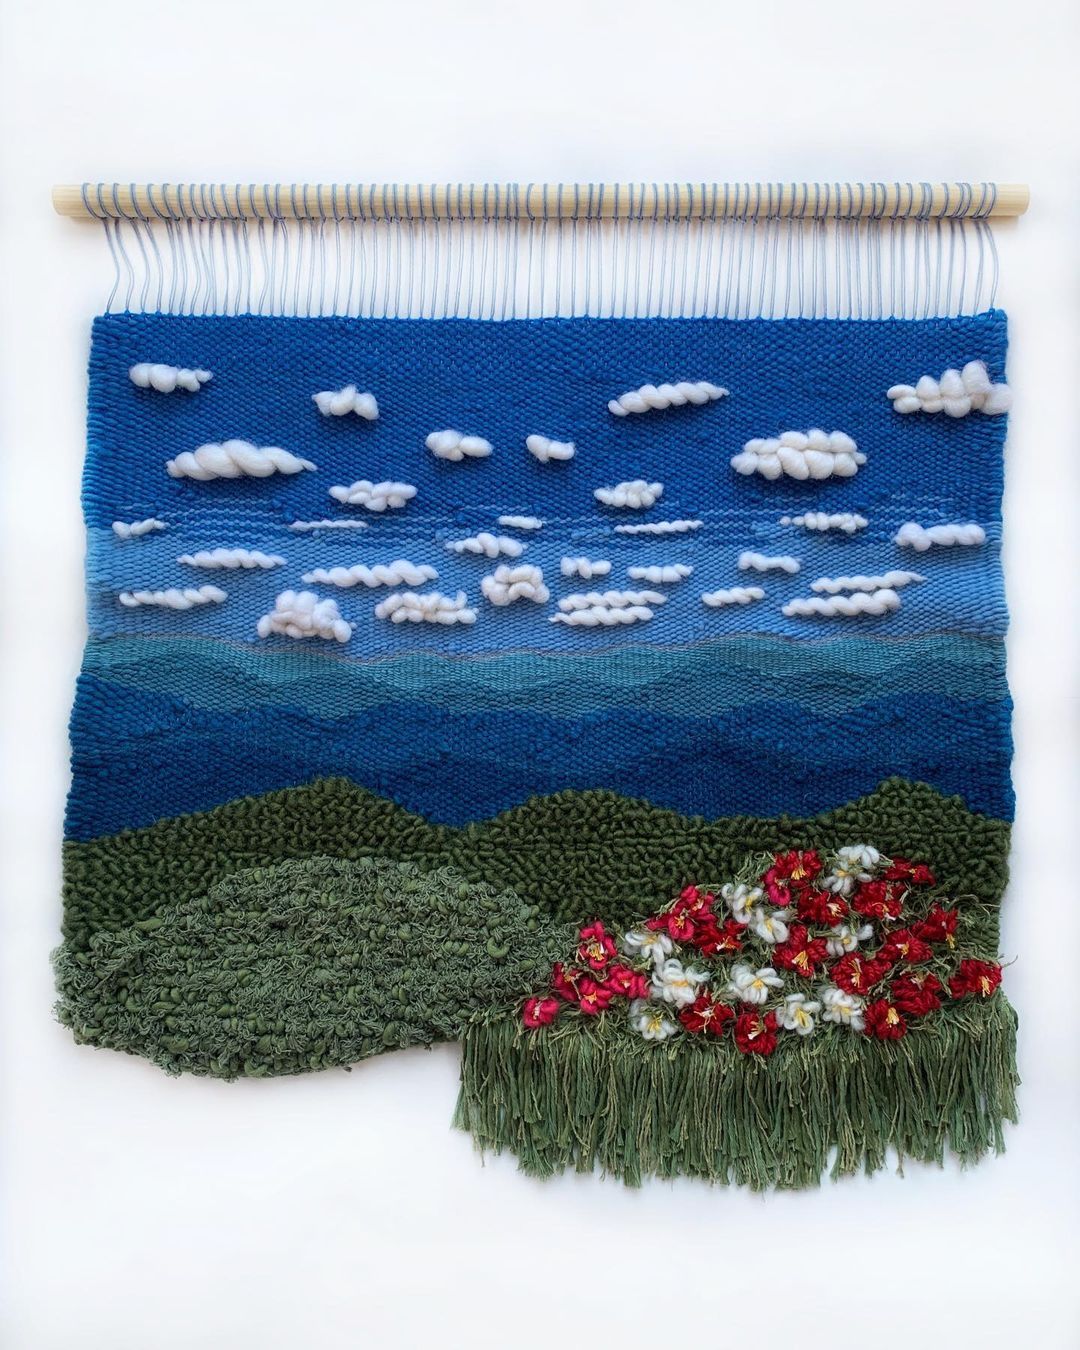 Weaving landscape art by Painted Sky Textile